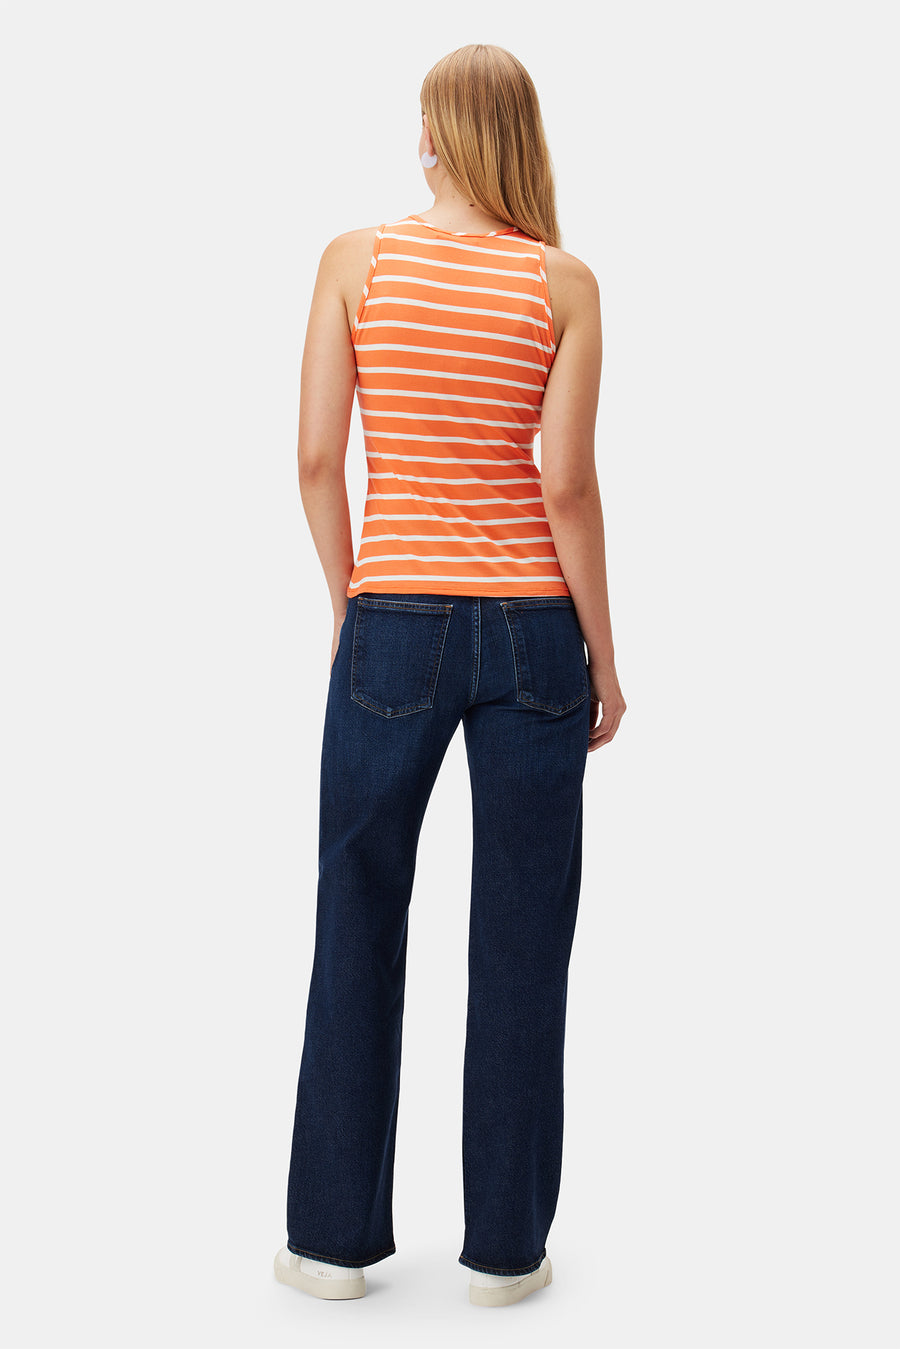 Jillian Dream Knit Tank - Tangerine Stripe